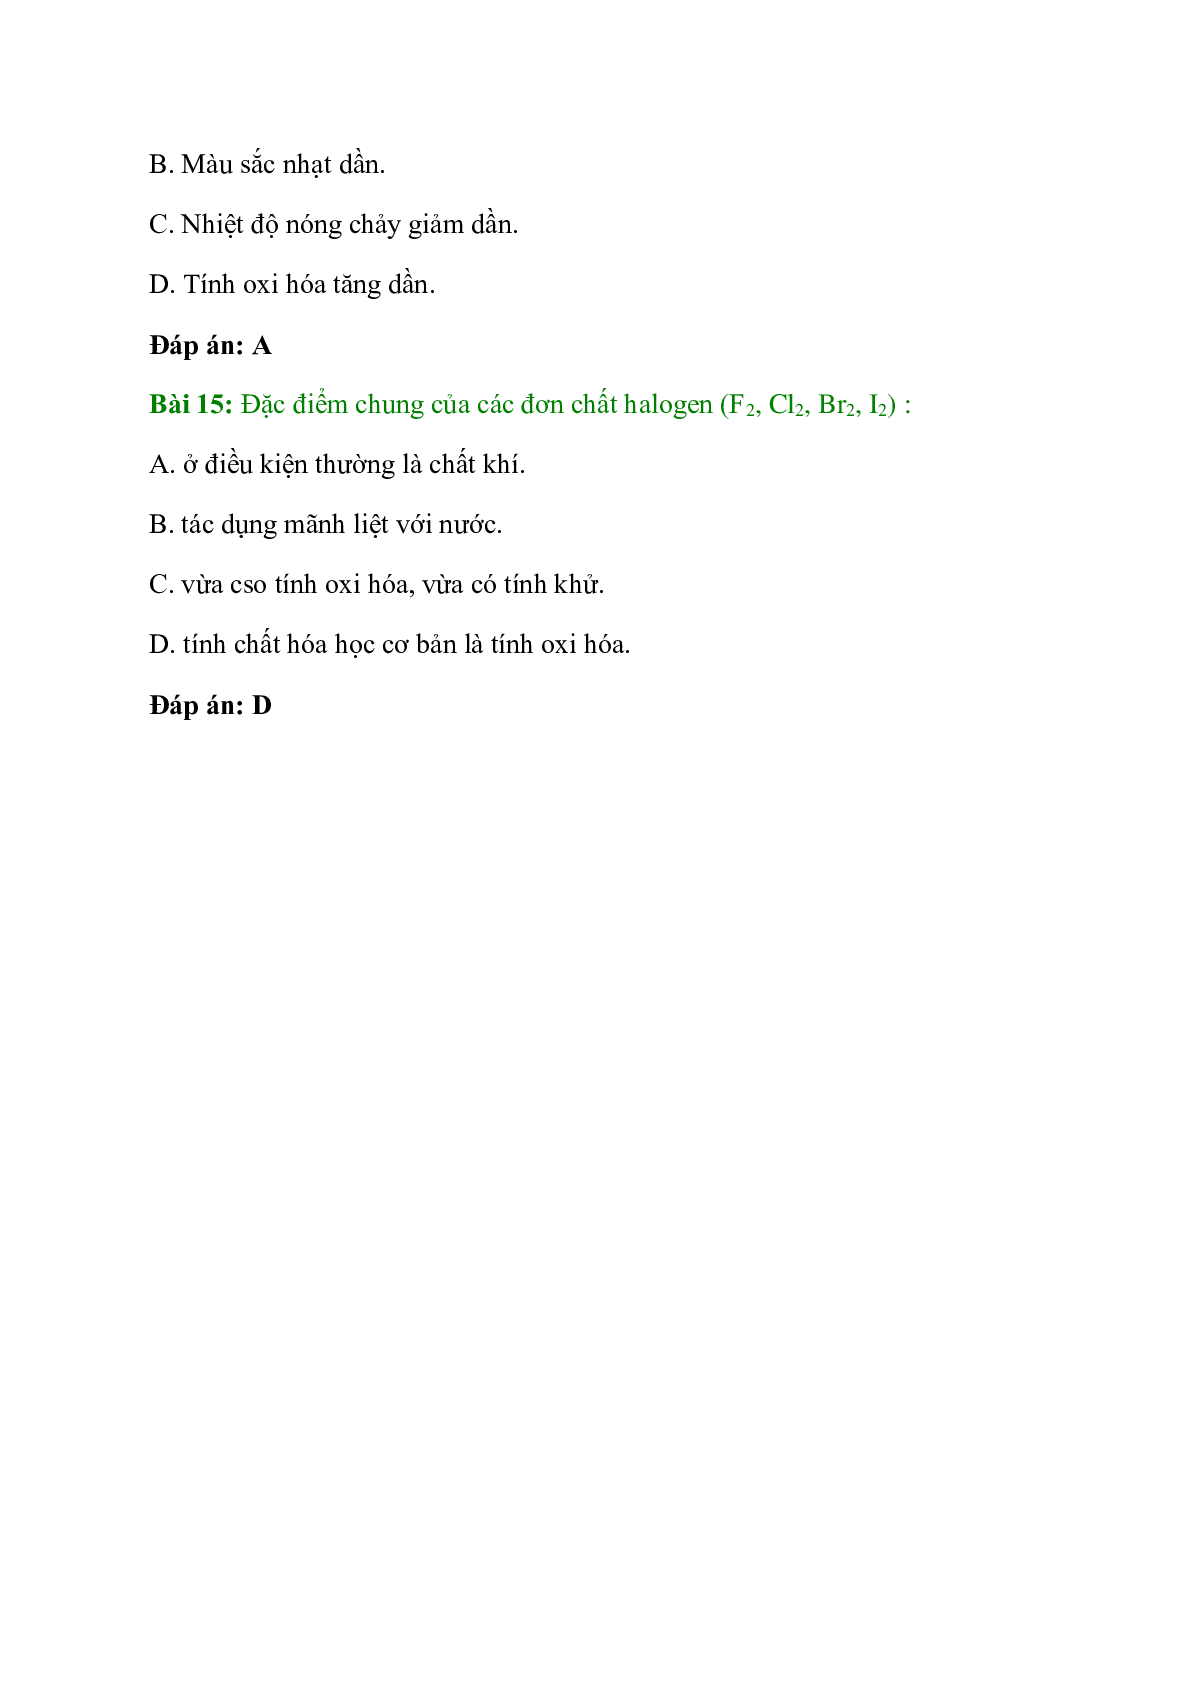 Trắc nghiệm Khái quát về nhóm halogen có đáp án - Hóa học 10 (trang 5)